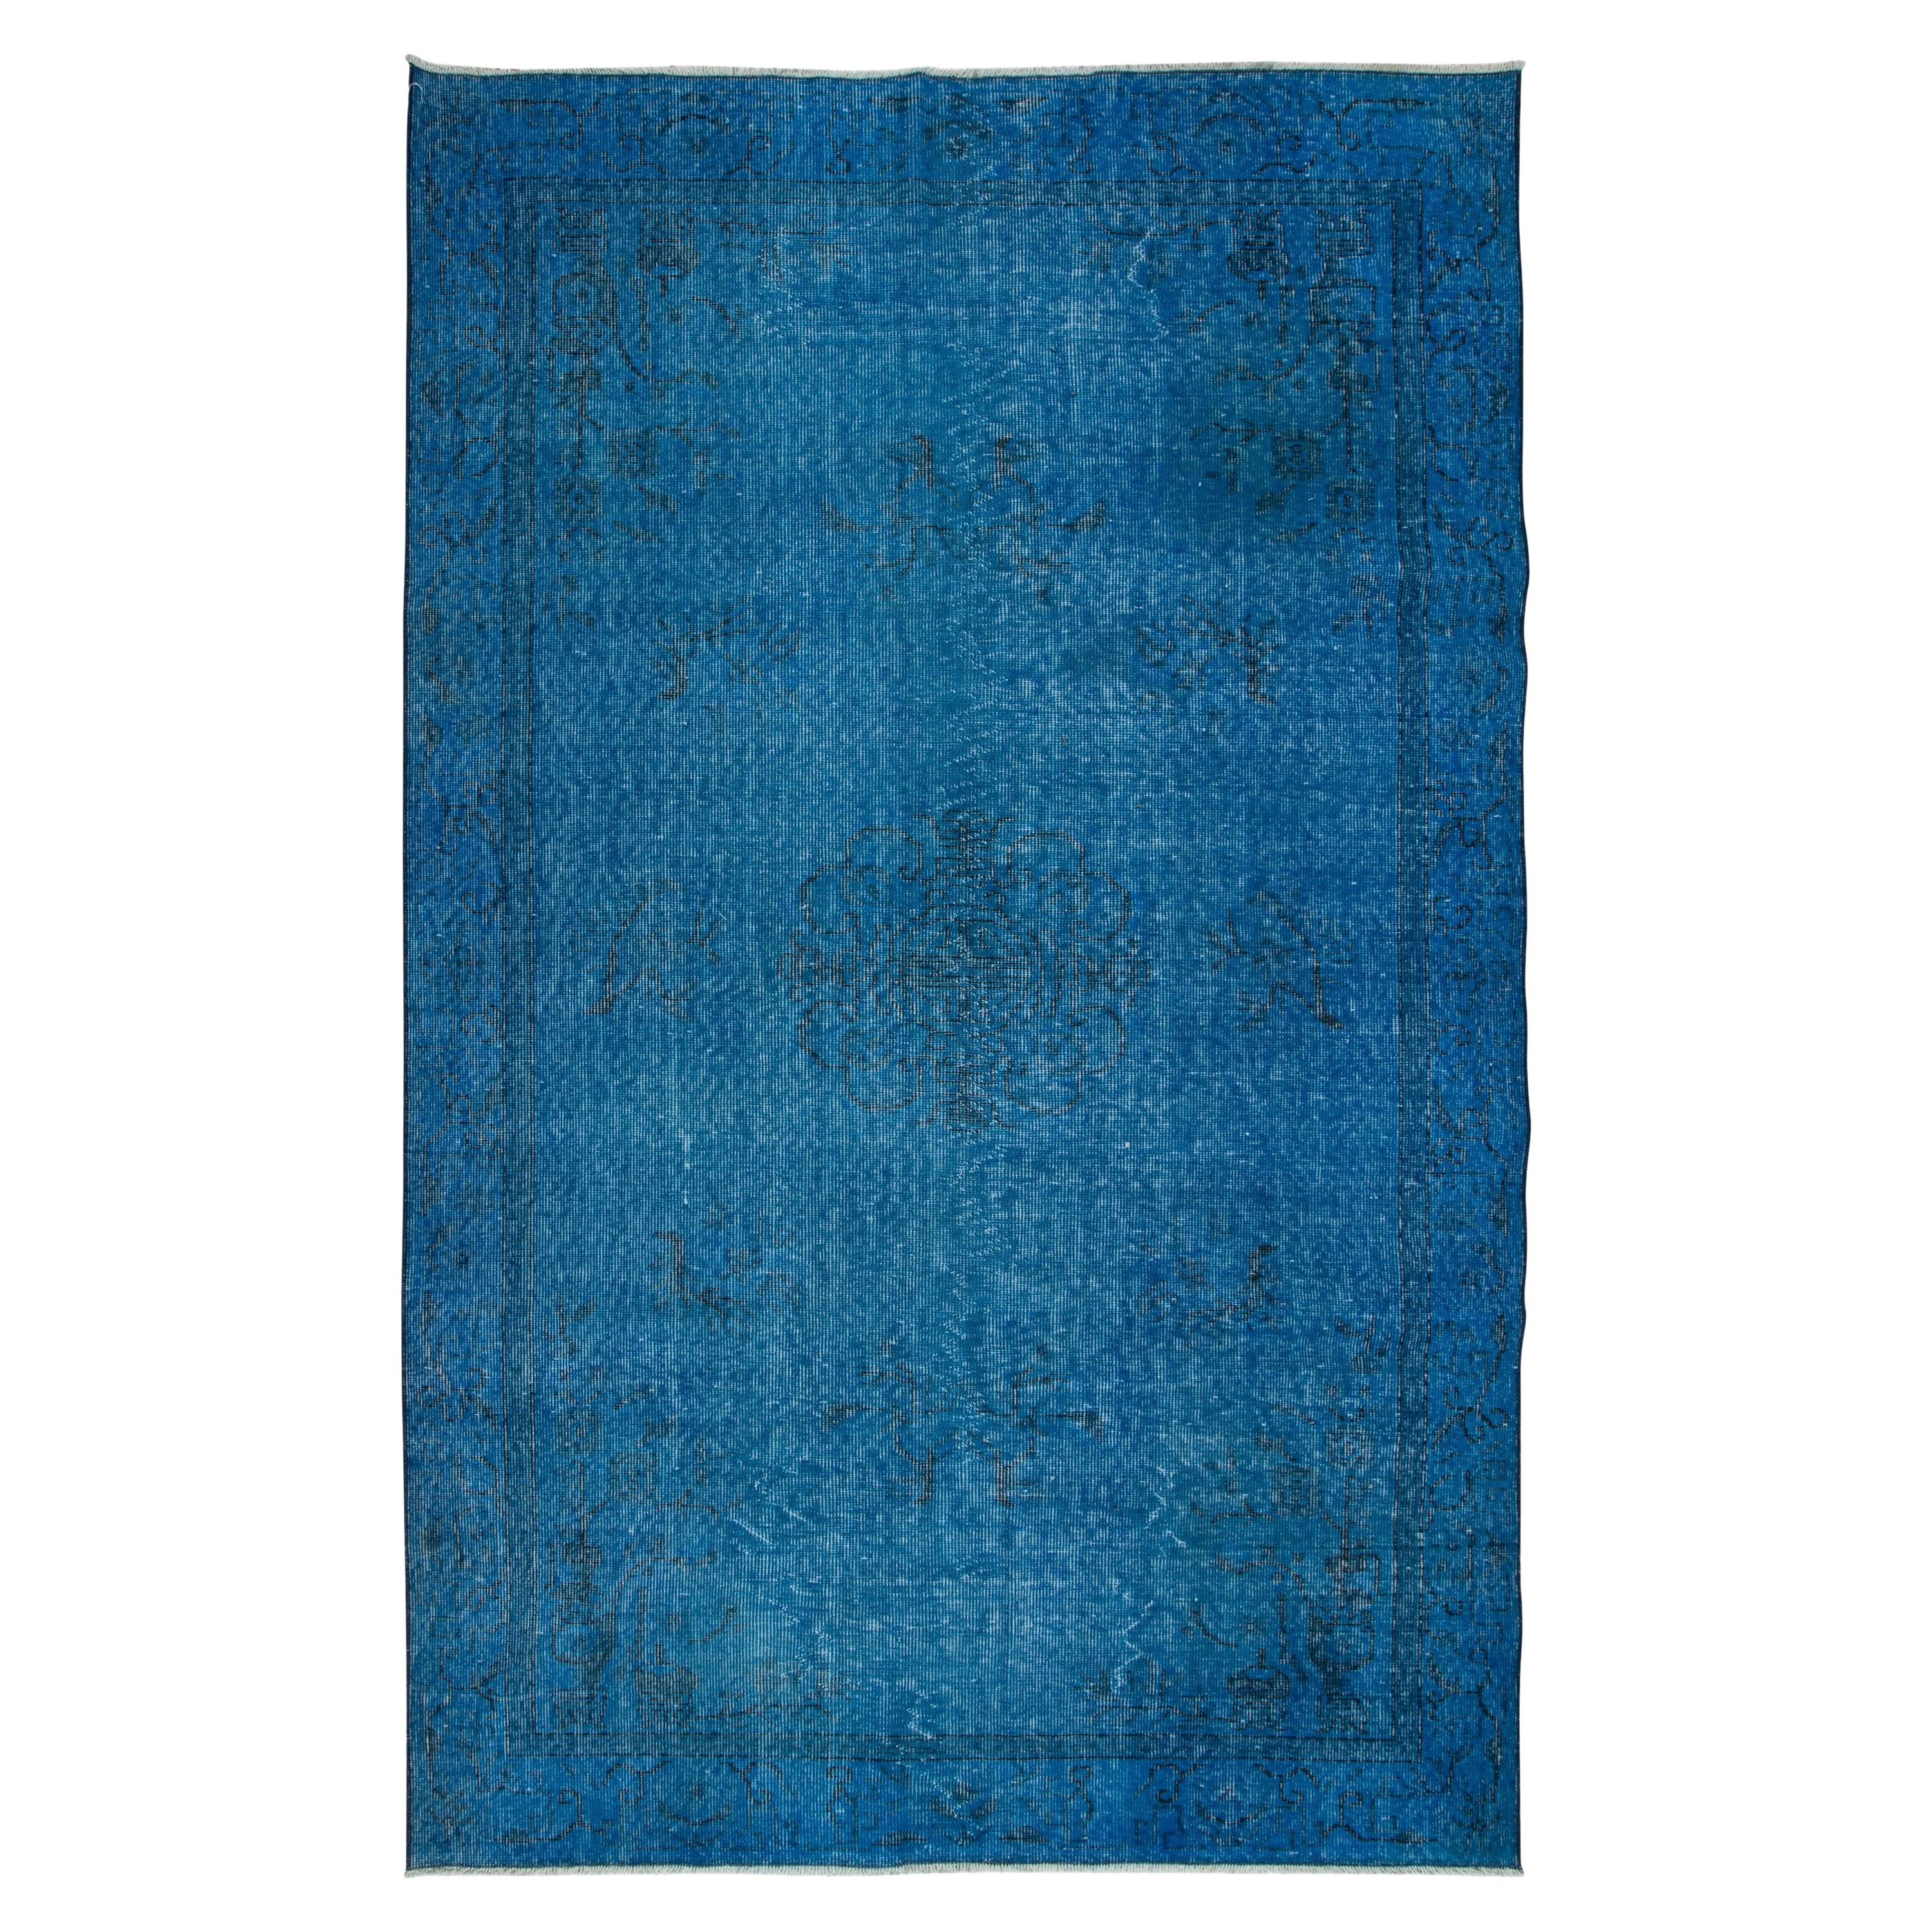 5.5x8.8 Ft Chinese Art Deco Inspired Handmade Blue Rug for Modern Interiors